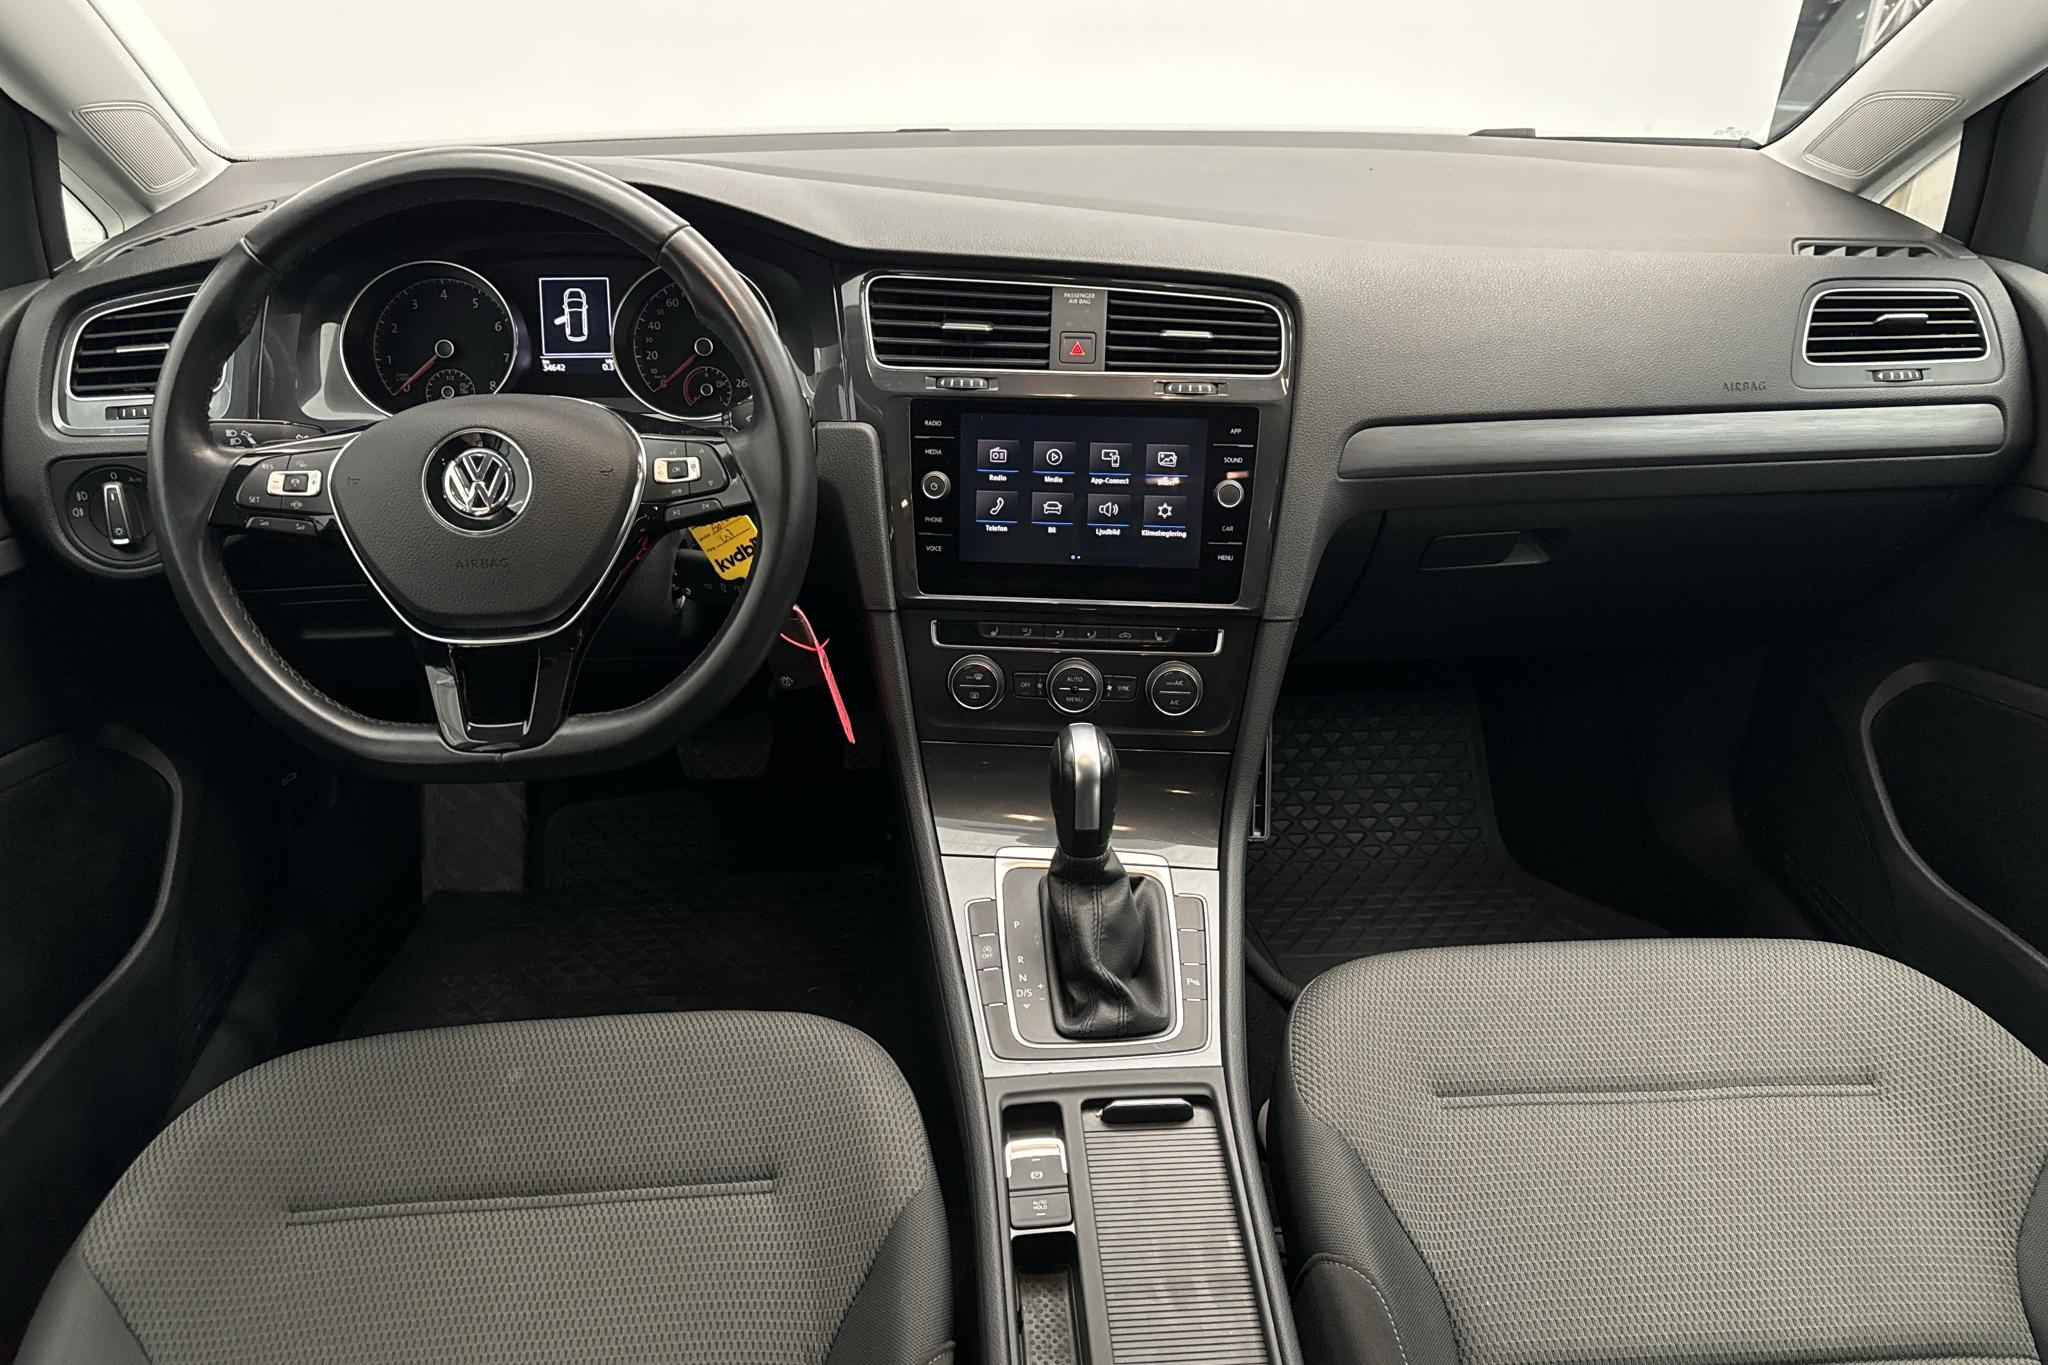 VW Golf VII 1.5 TGI Kombi (130hk) - 3 464 mil - Automat - vit - 2020